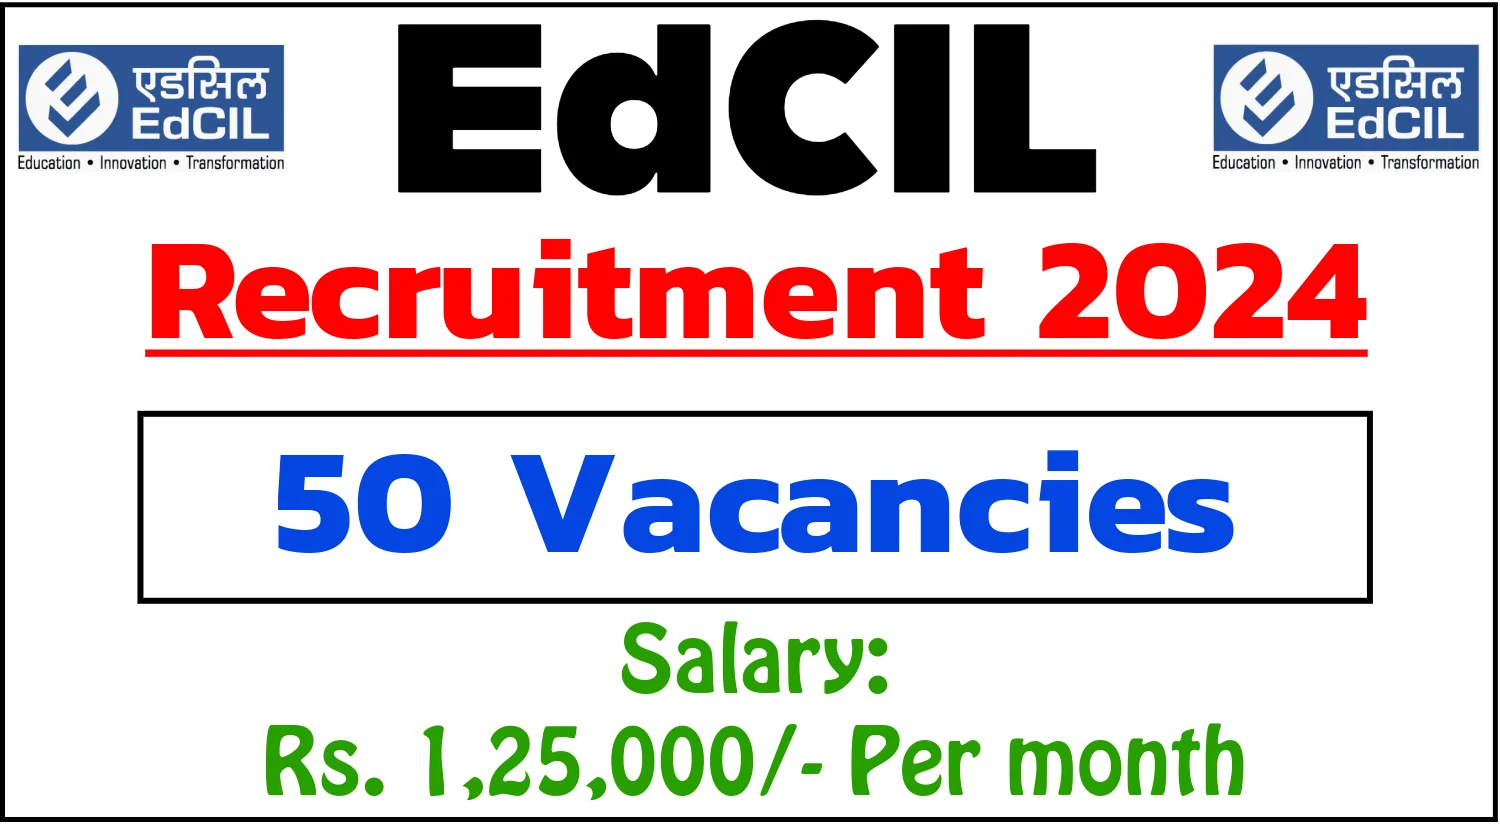 EdCIL Recruitment 2024